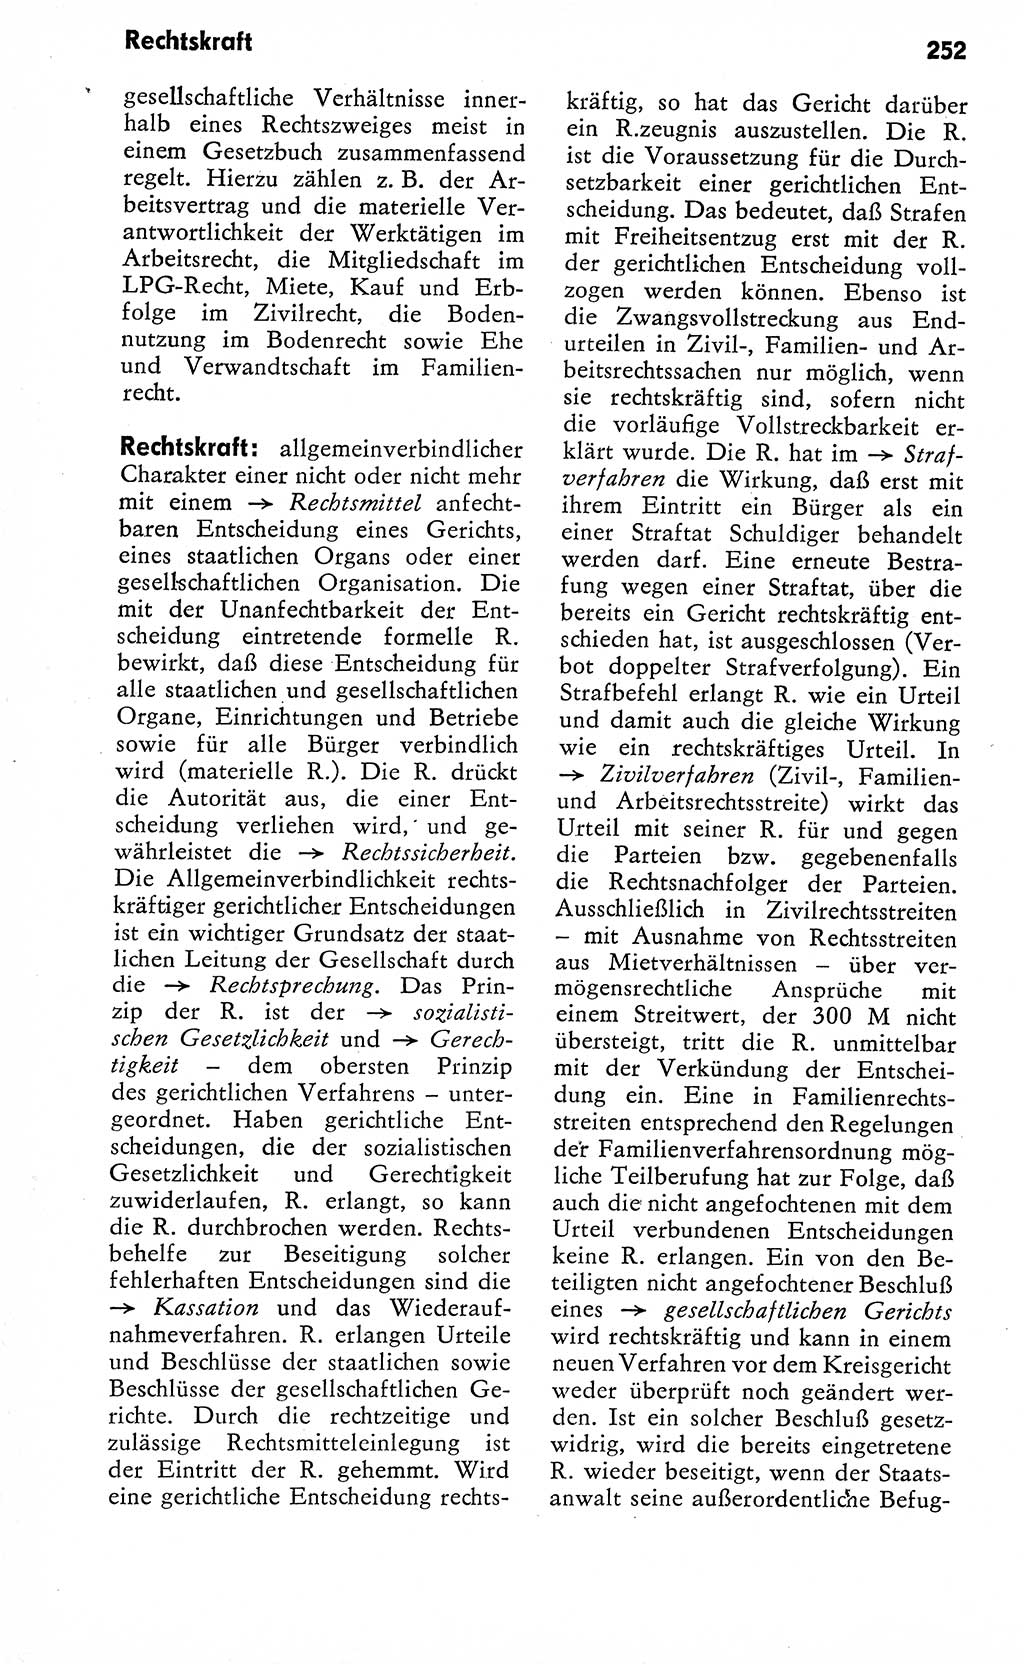 Wörterbuch zum sozialistischen Staat [Deutsche Demokratische Republik (DDR)] 1974, Seite 252 (Wb. soz. St. DDR 1974, S. 252)